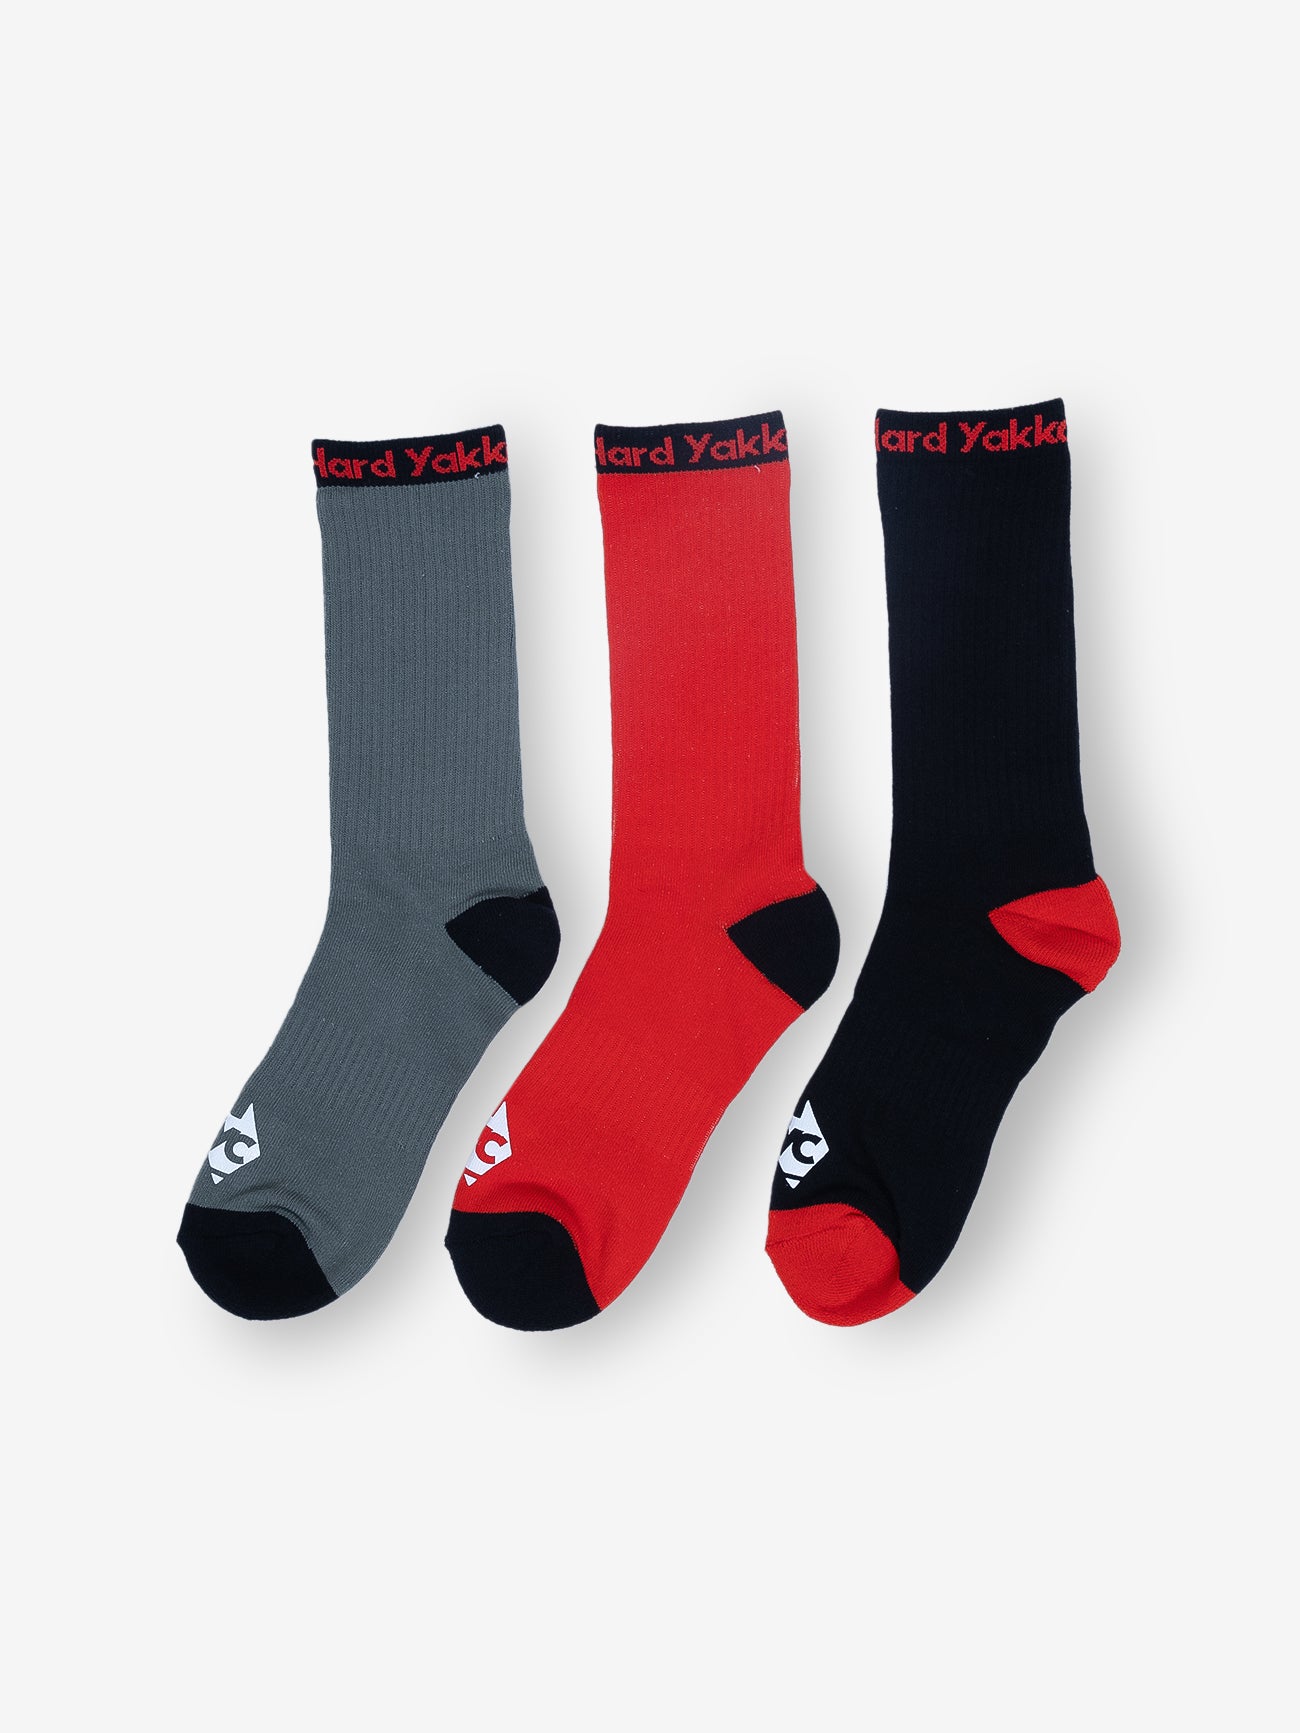 Hard Yakka Create - 3 Pack Socks - Black/Red/Scrubs Green